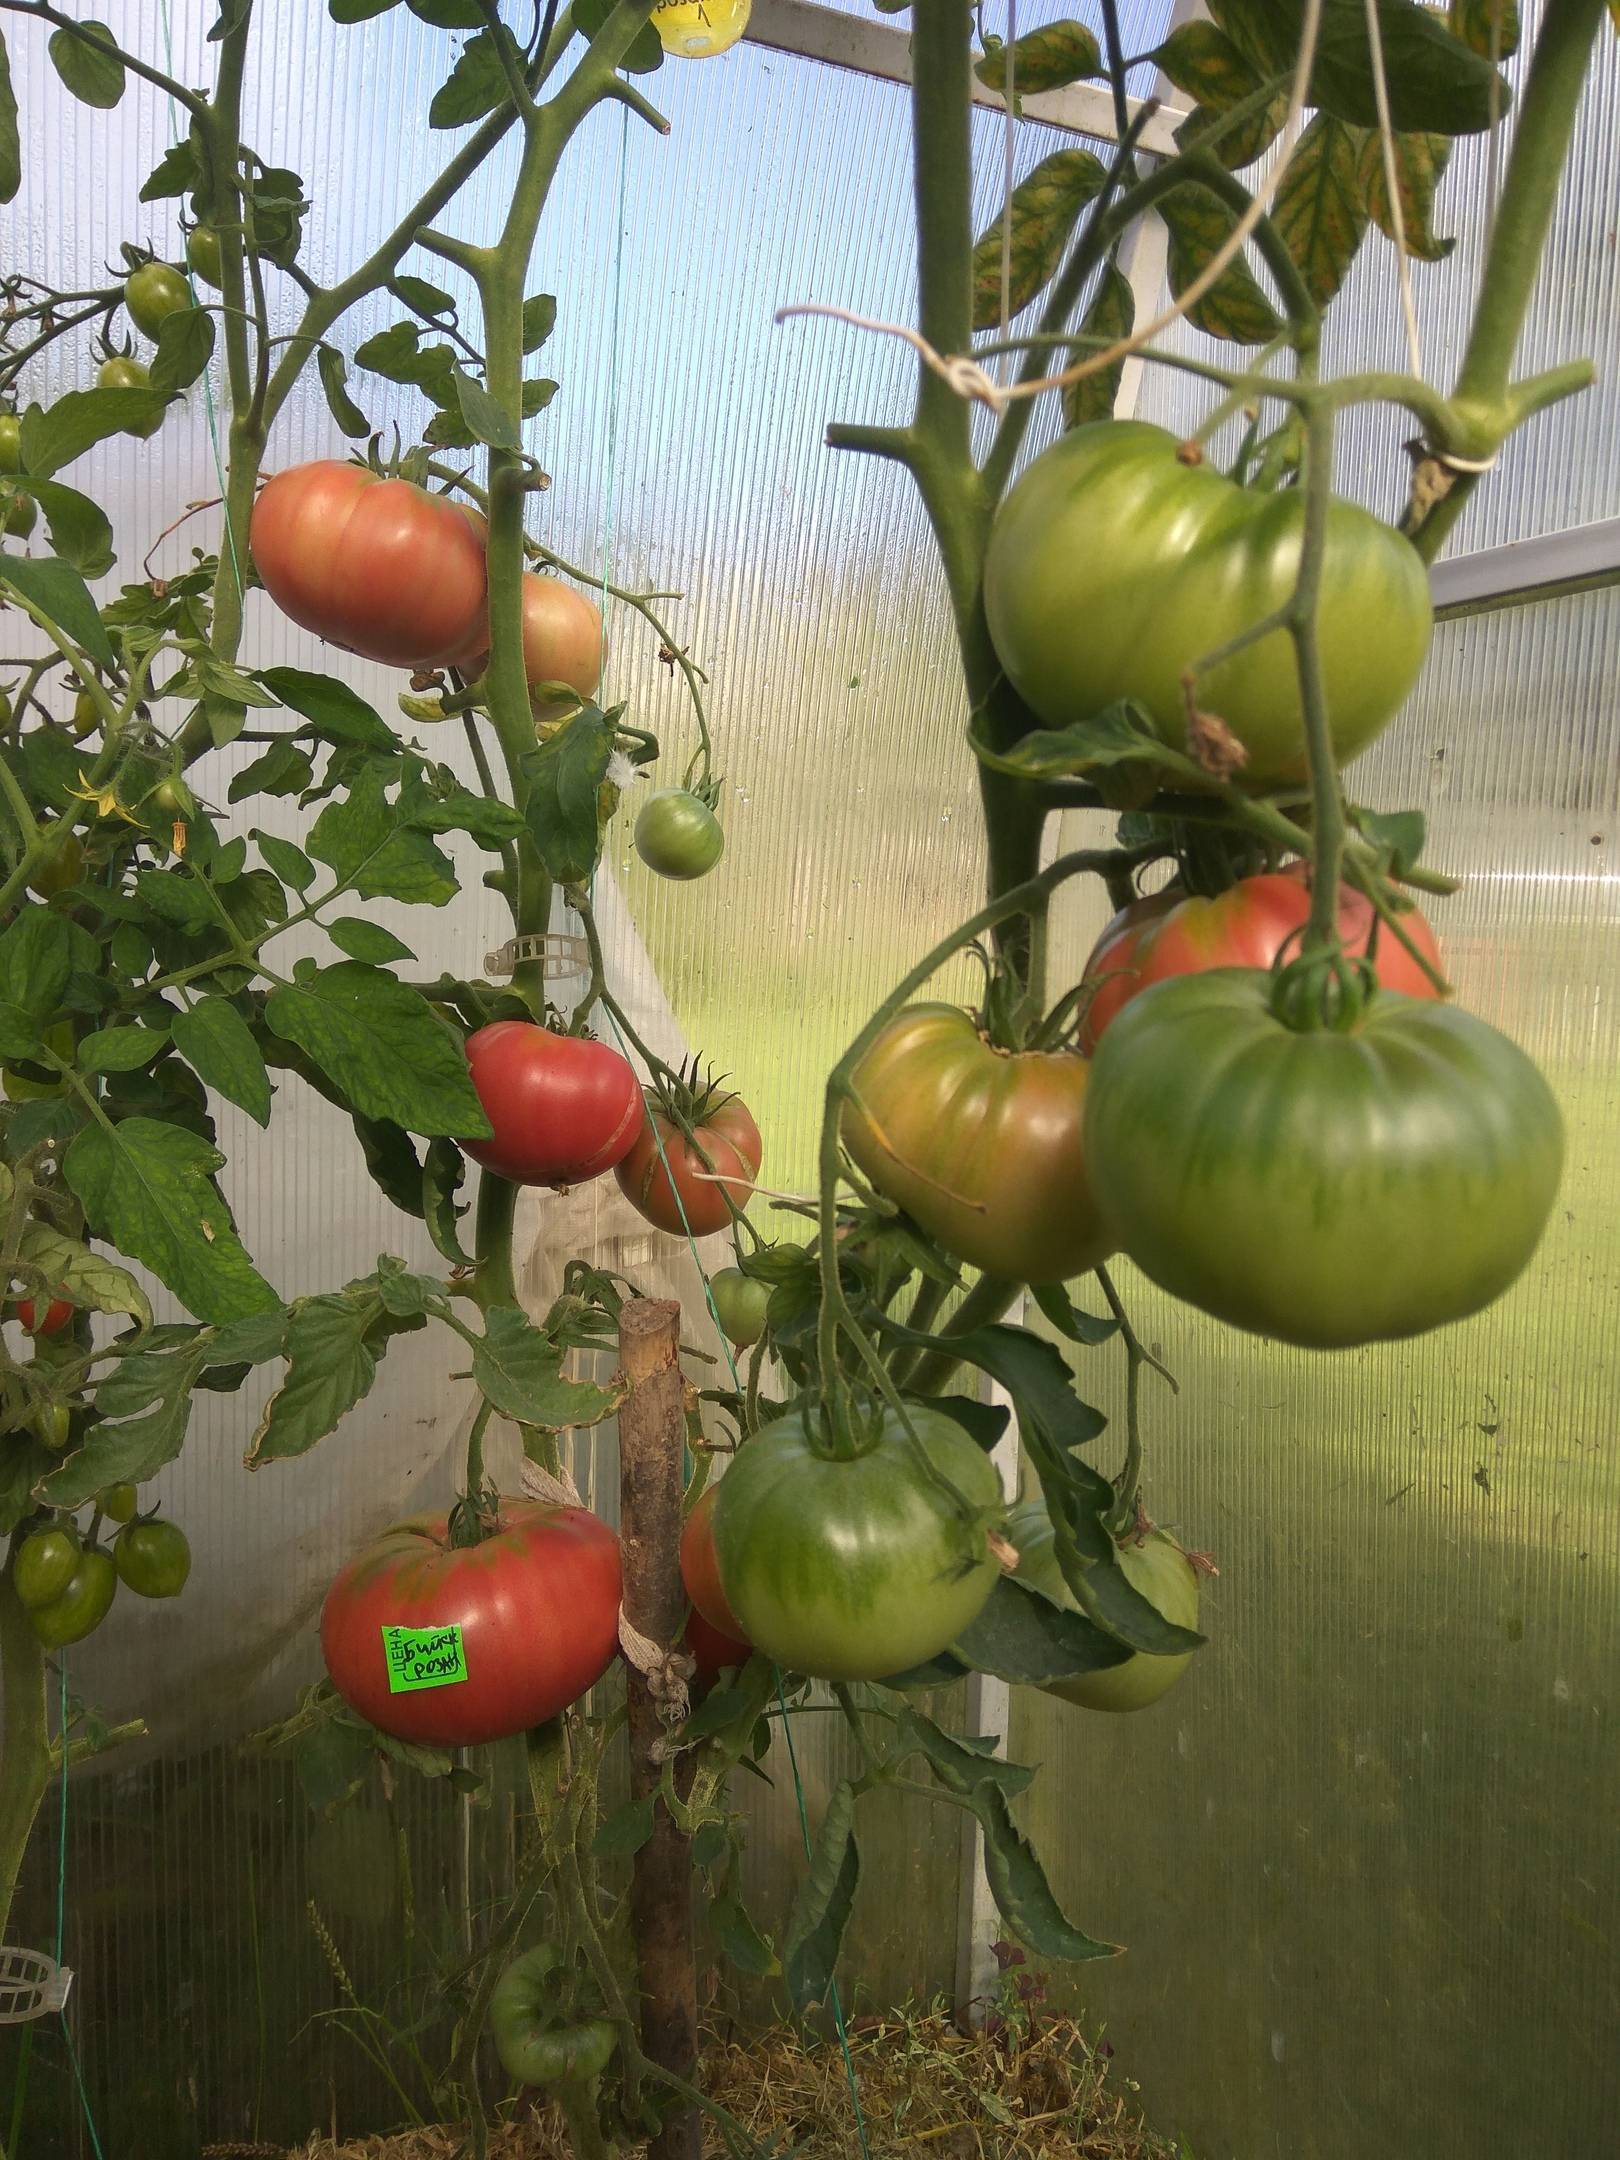 Секреты выращивания и ухода за томатами бийский розан — описание сорта и его характеристики